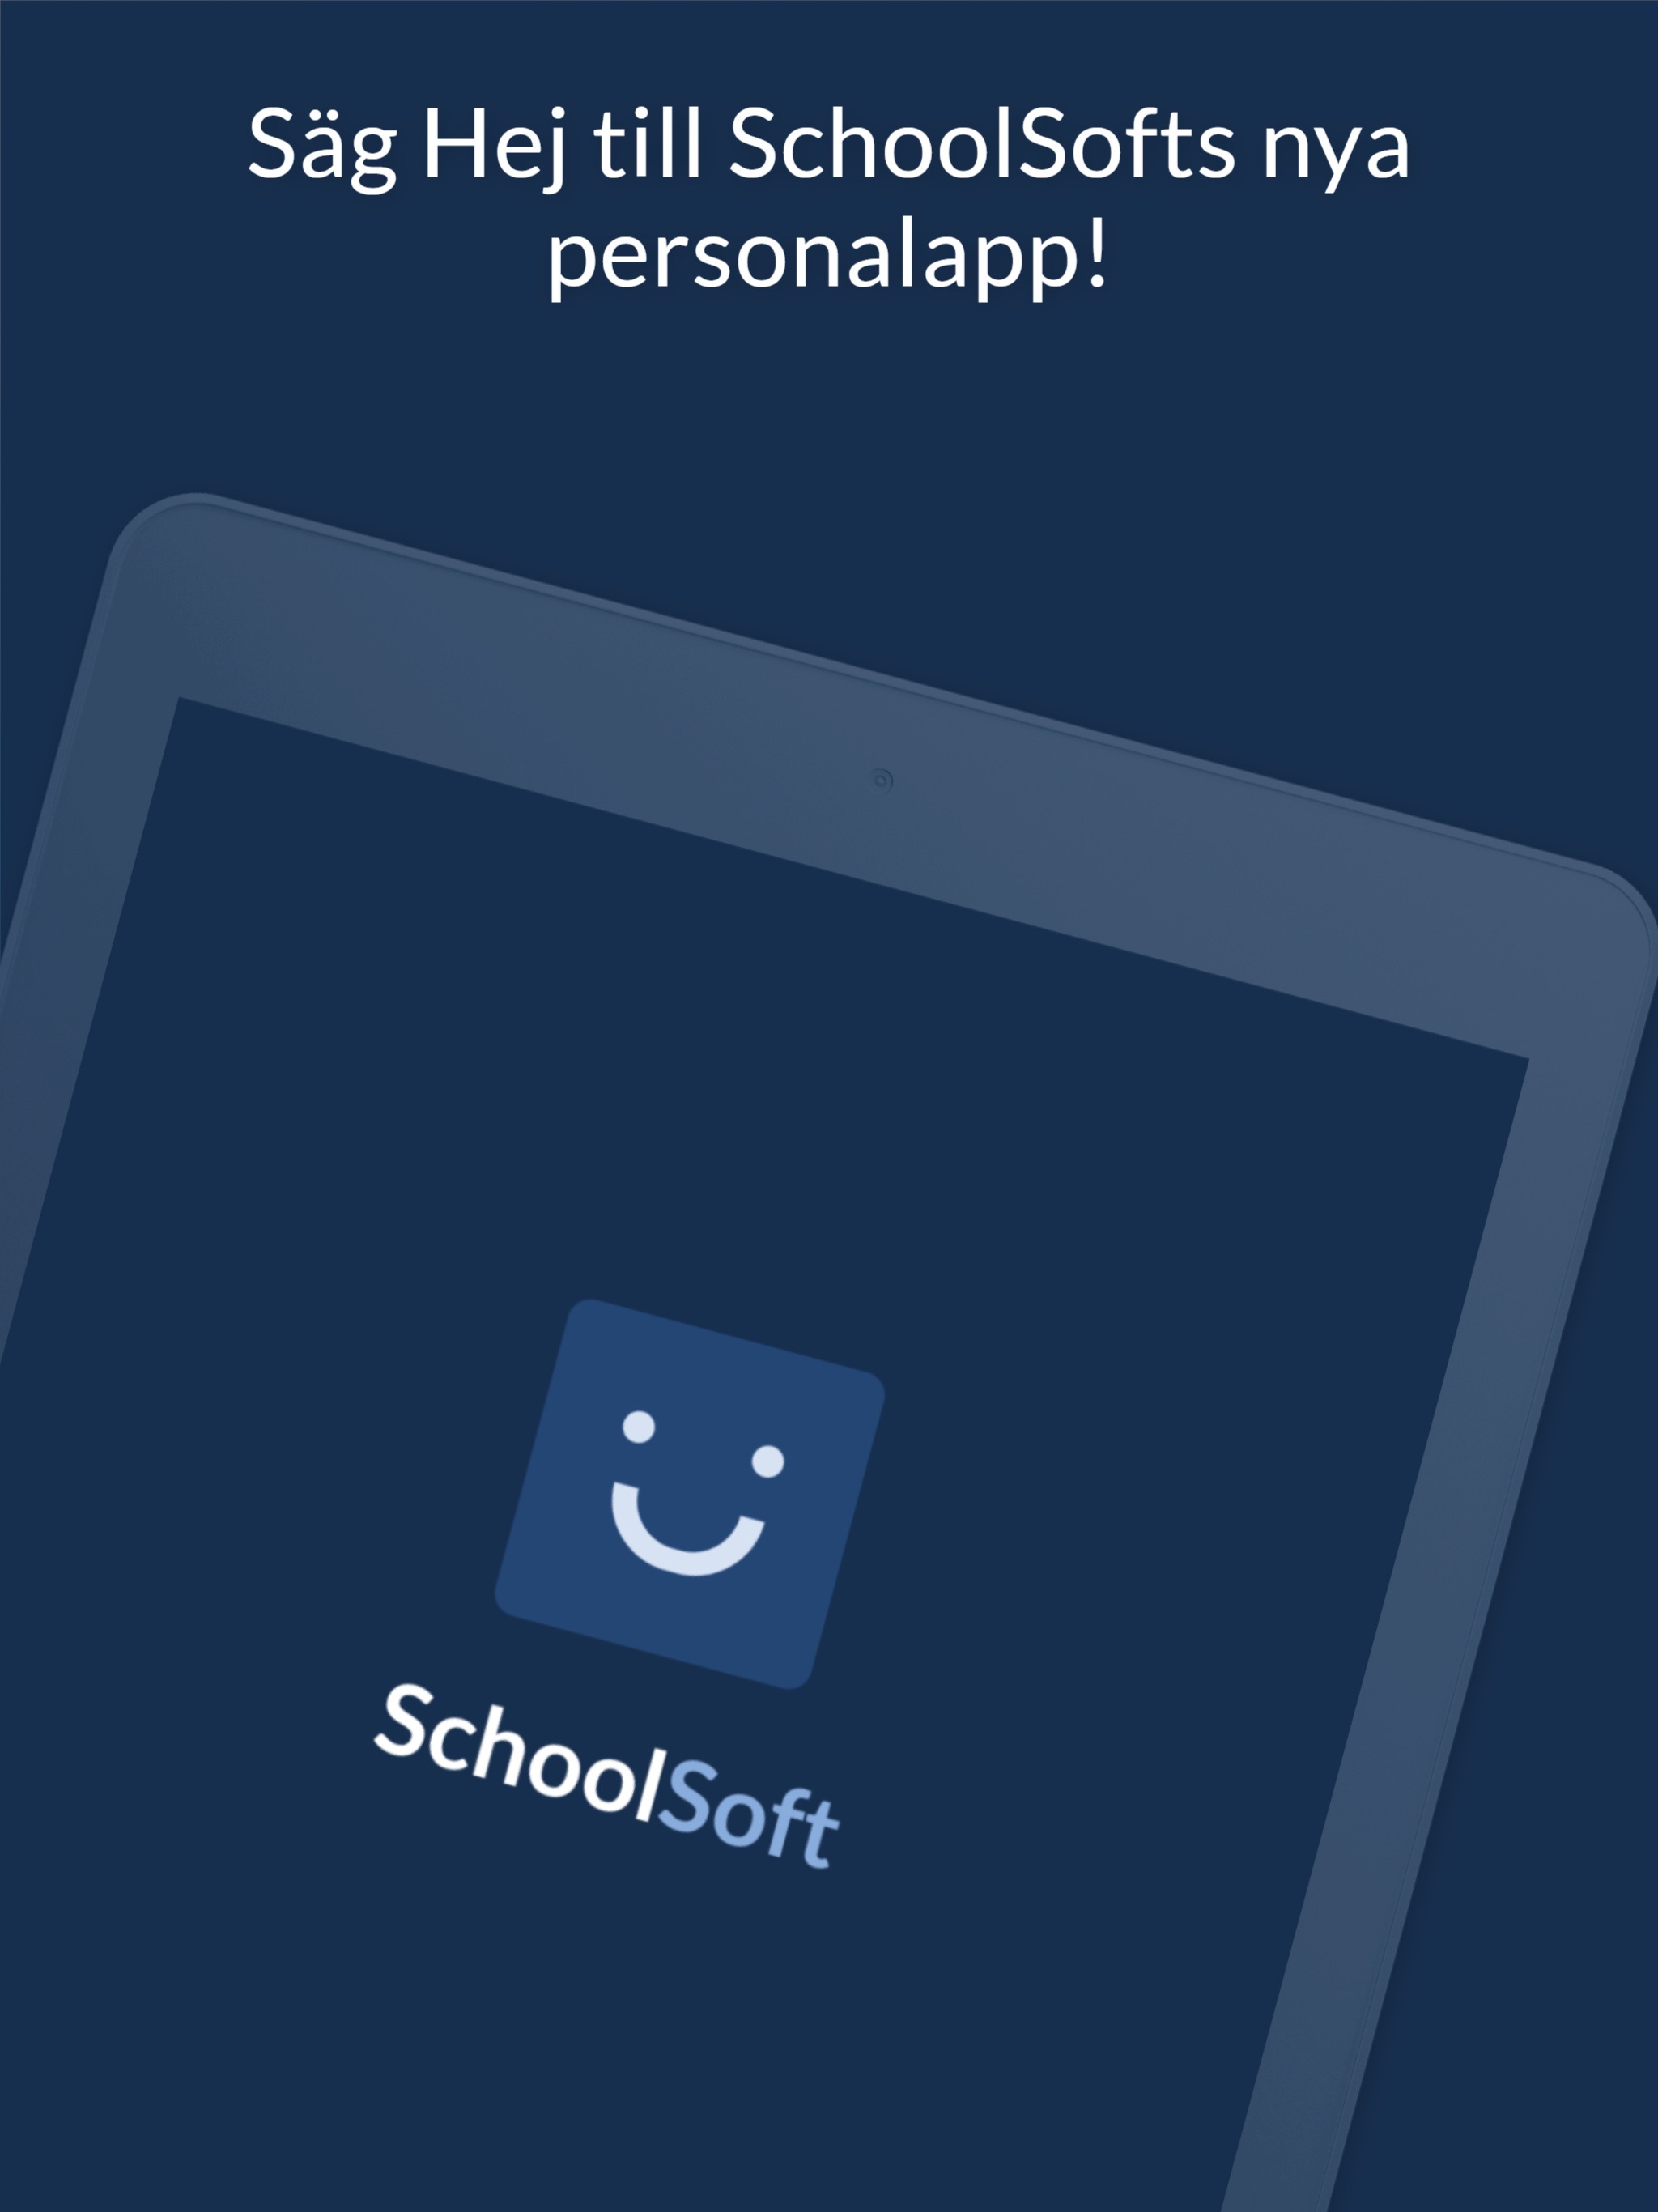 SchoolSoft Personal Appのおすすめ画像1